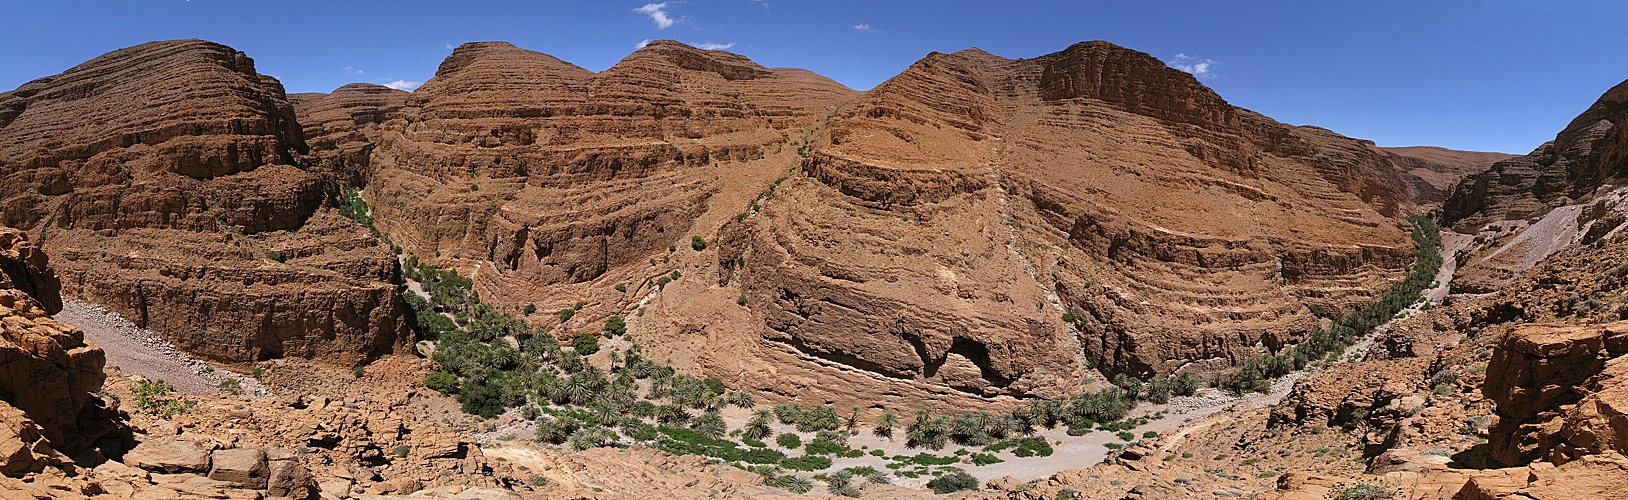 morocco-oued-smouguene-valley-tafraout1532103929.JPG